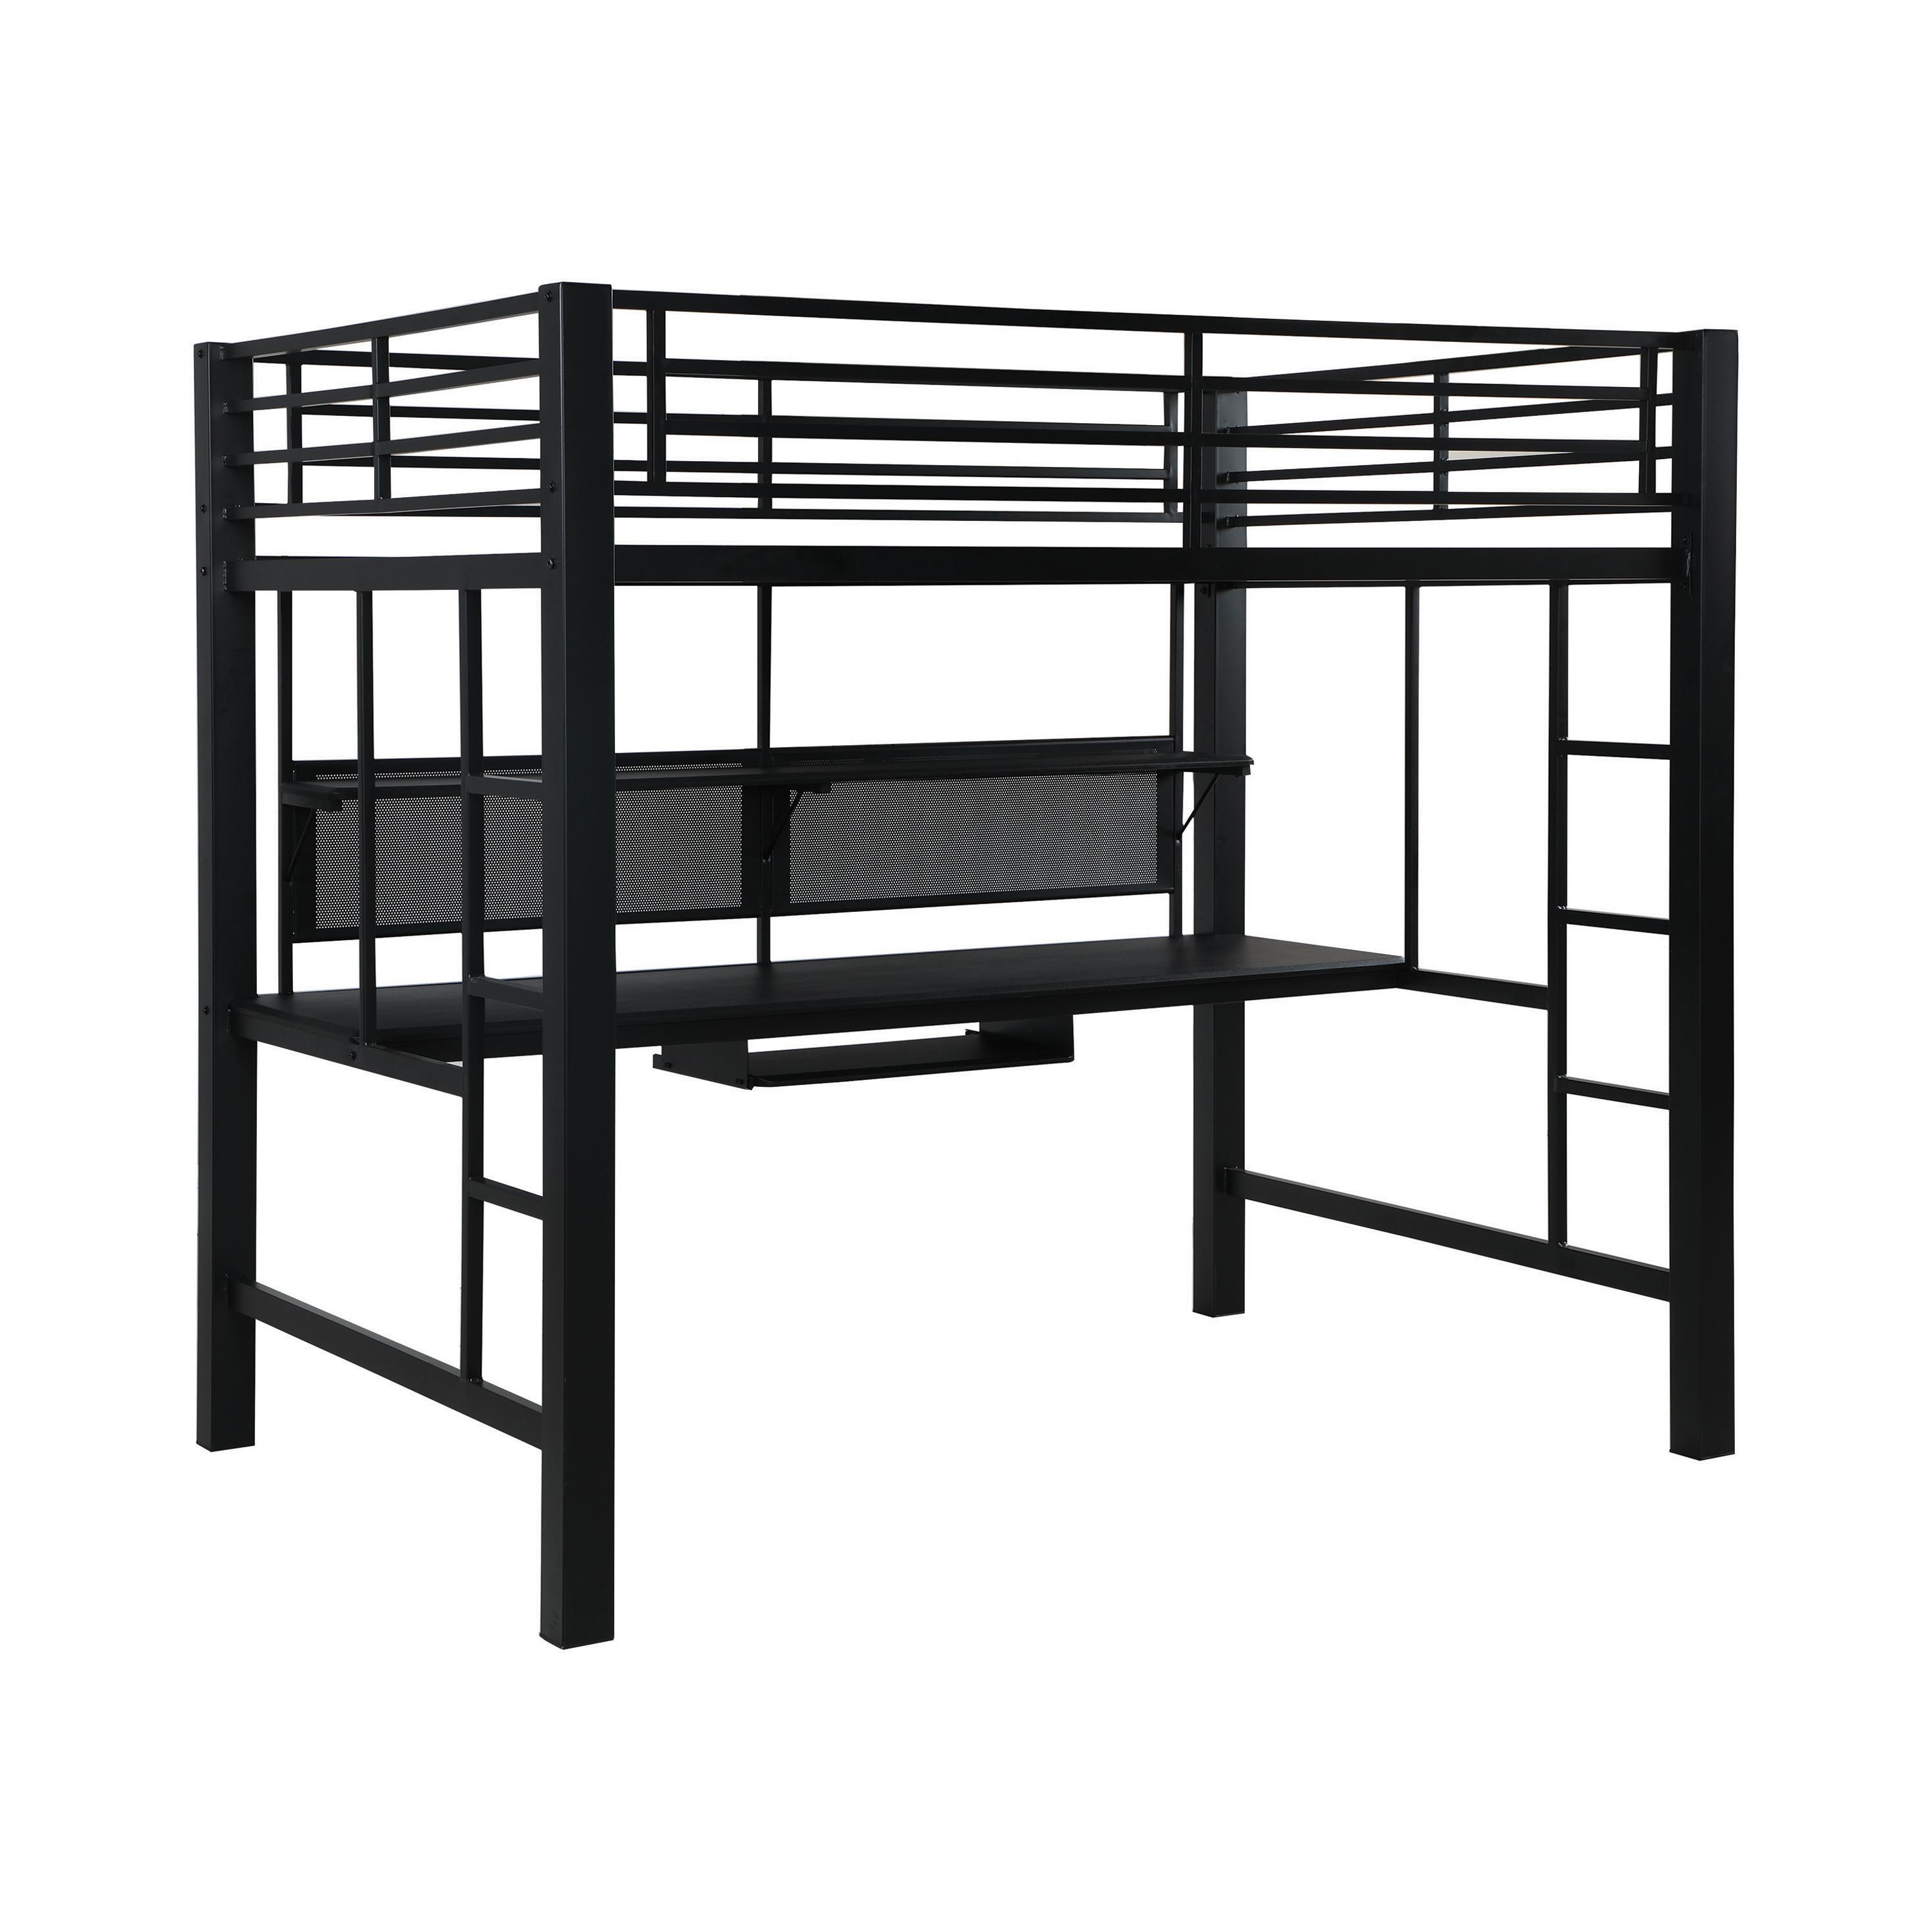 Workstation Loft Bed for sale – buy online on NY Furniture Outlet